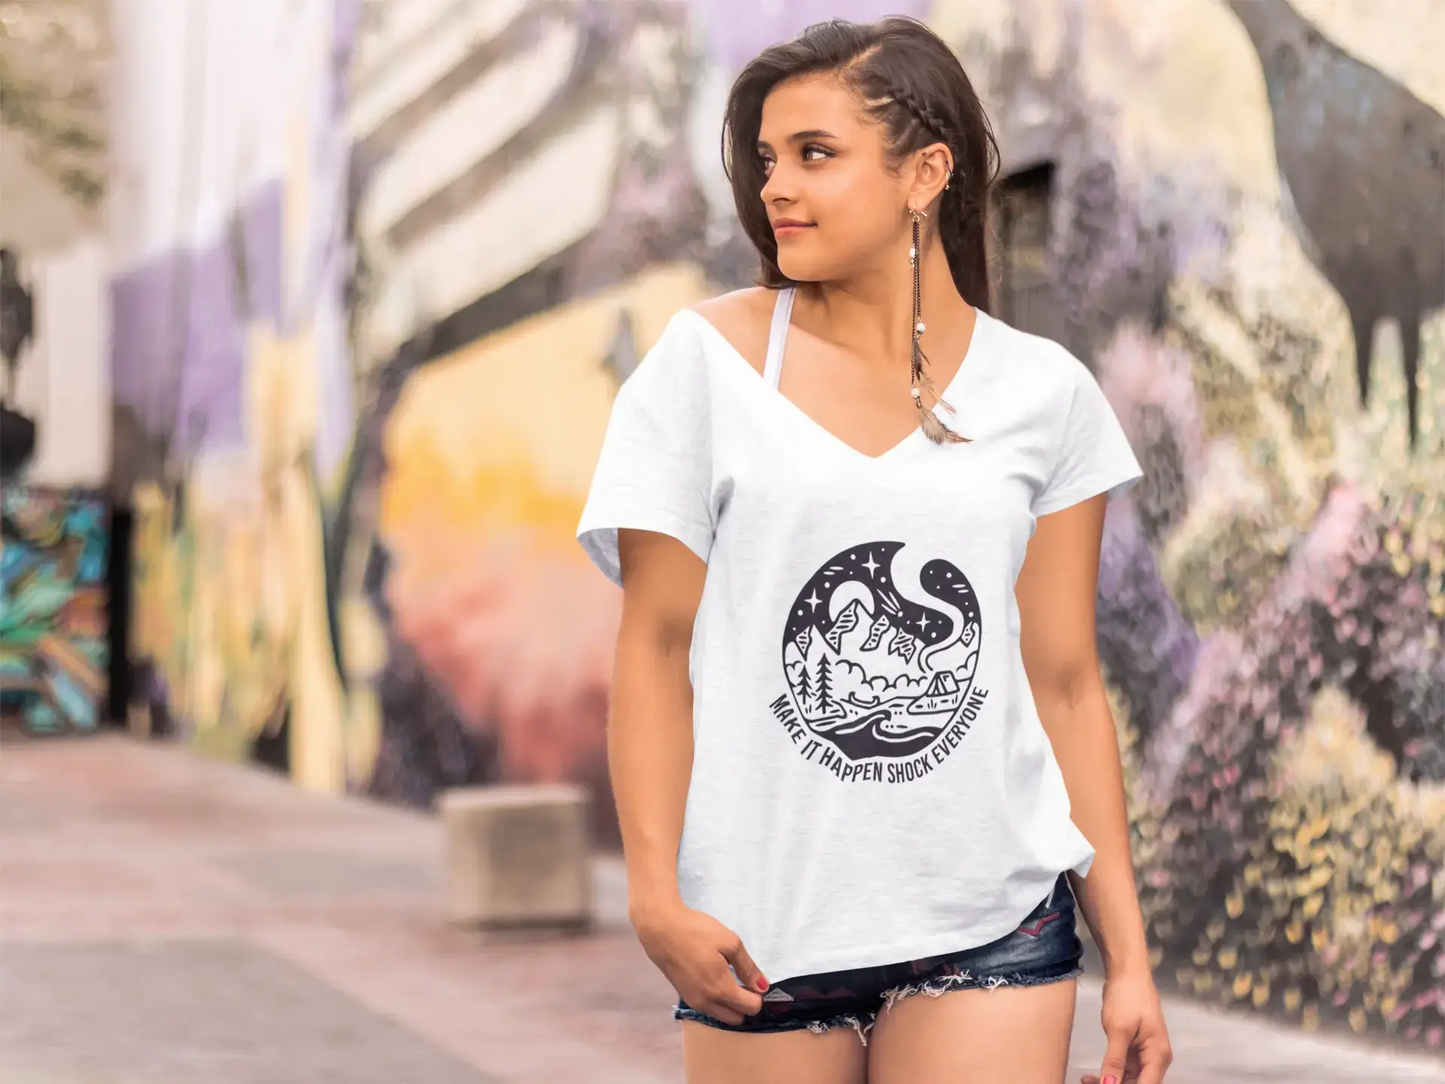 ULTRABASIC Women's T-Shirt Make it Happen Shock Everyone - Inspiration Shirts for Women